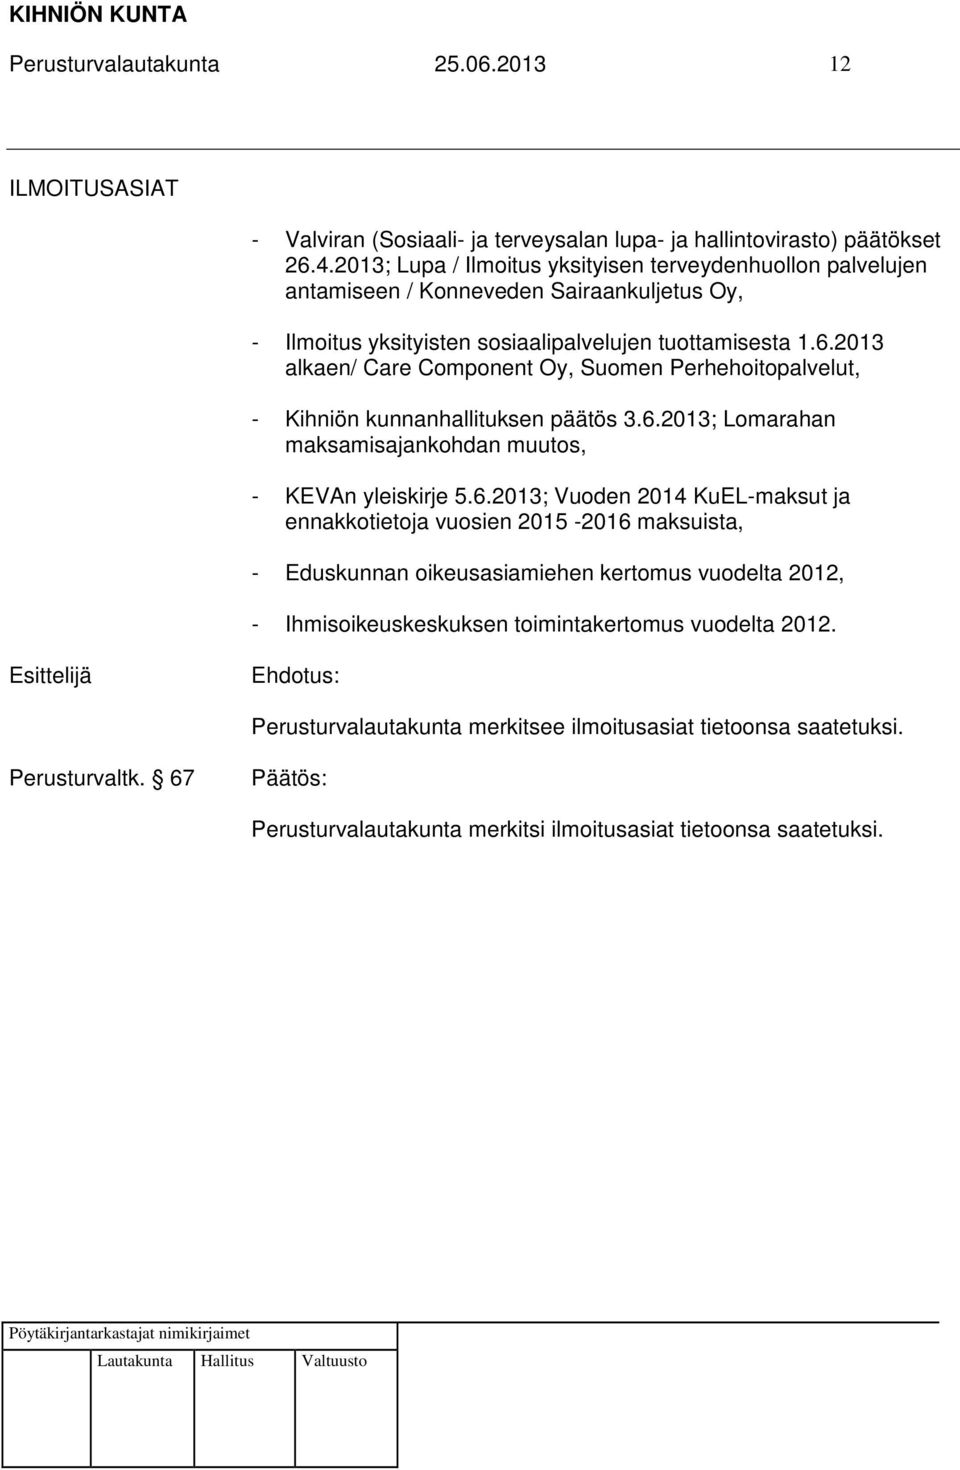 2013 alkaen/ Care Component Oy, Suomen Perhehoitopalvelut, - Kihniön kunnanhallituksen päätös 3.6.